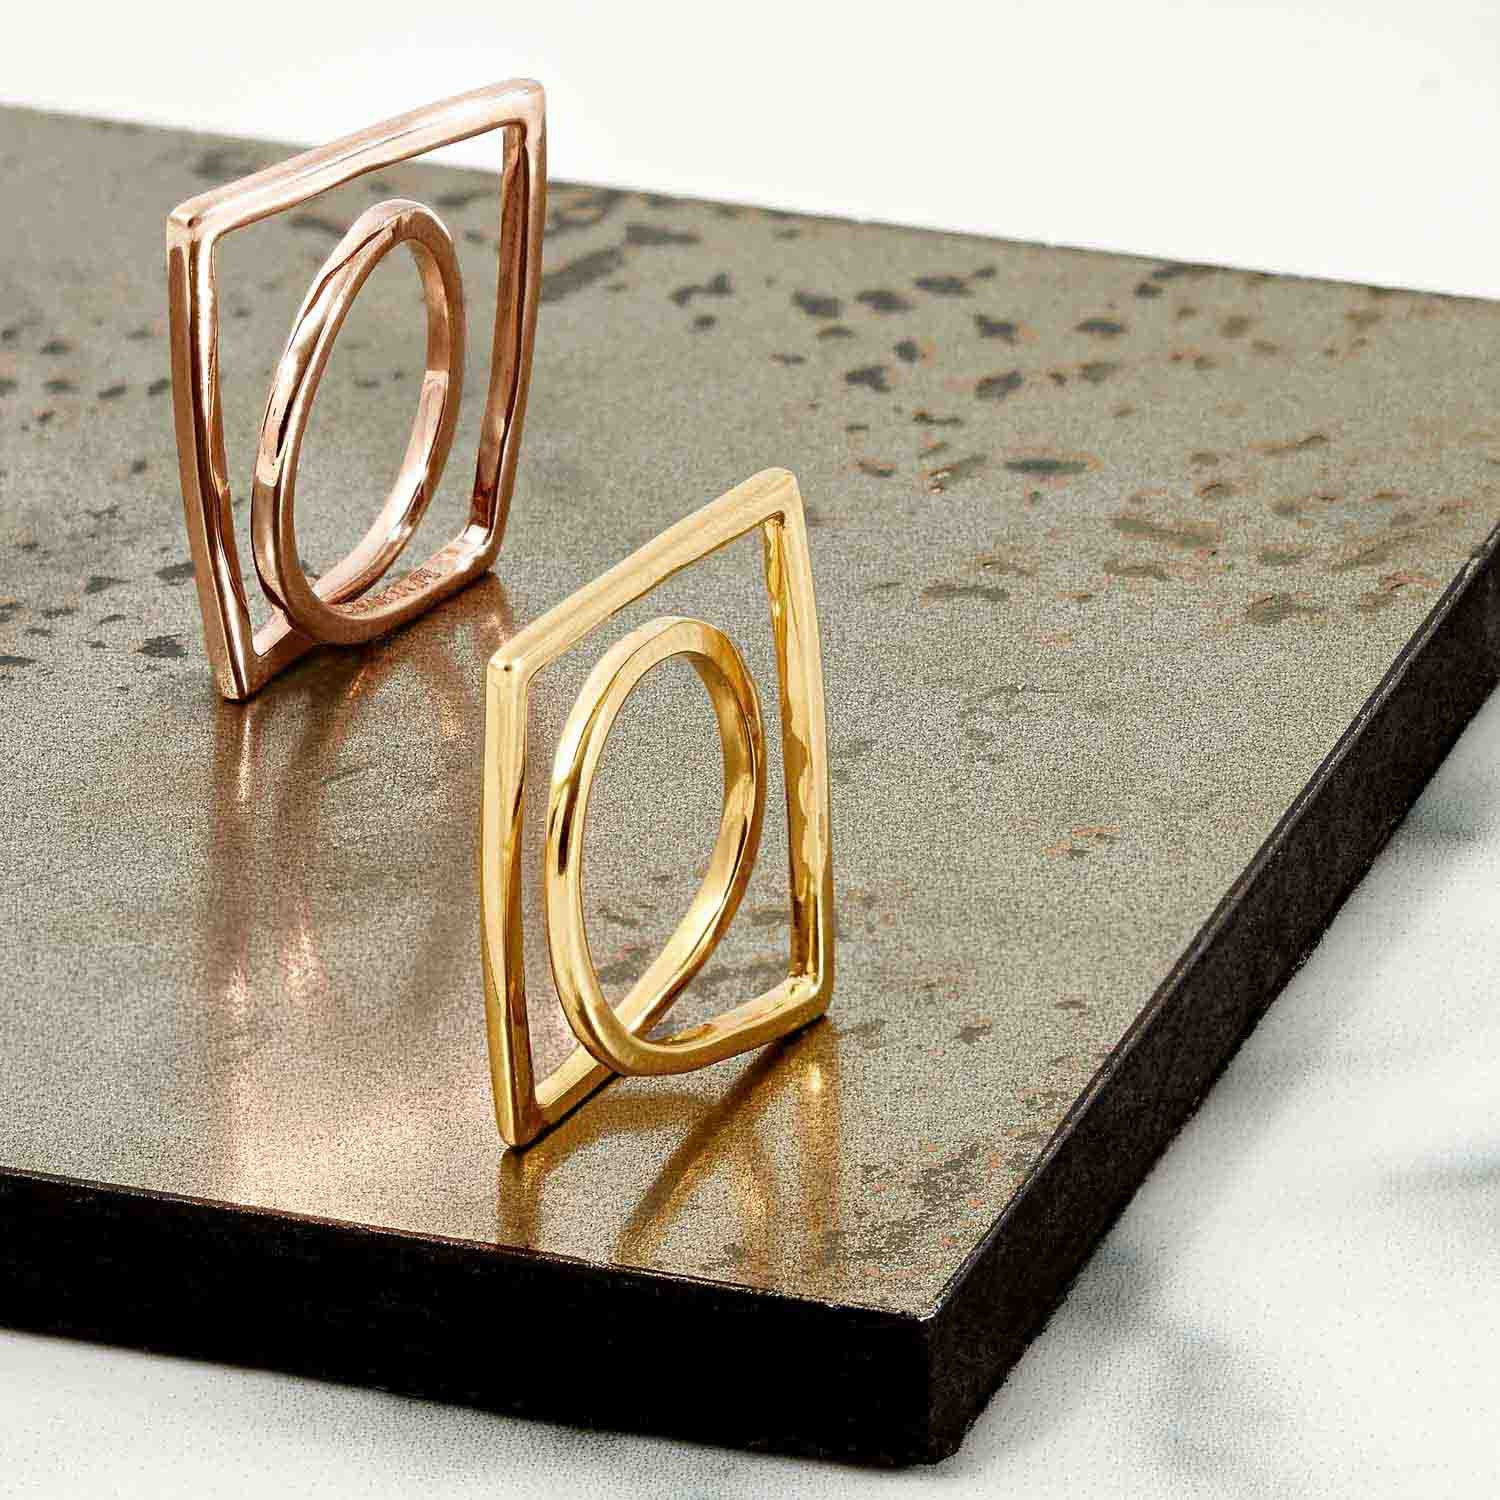 Gold vermeil, rose gold sculptured rings, Geometric, unique British design